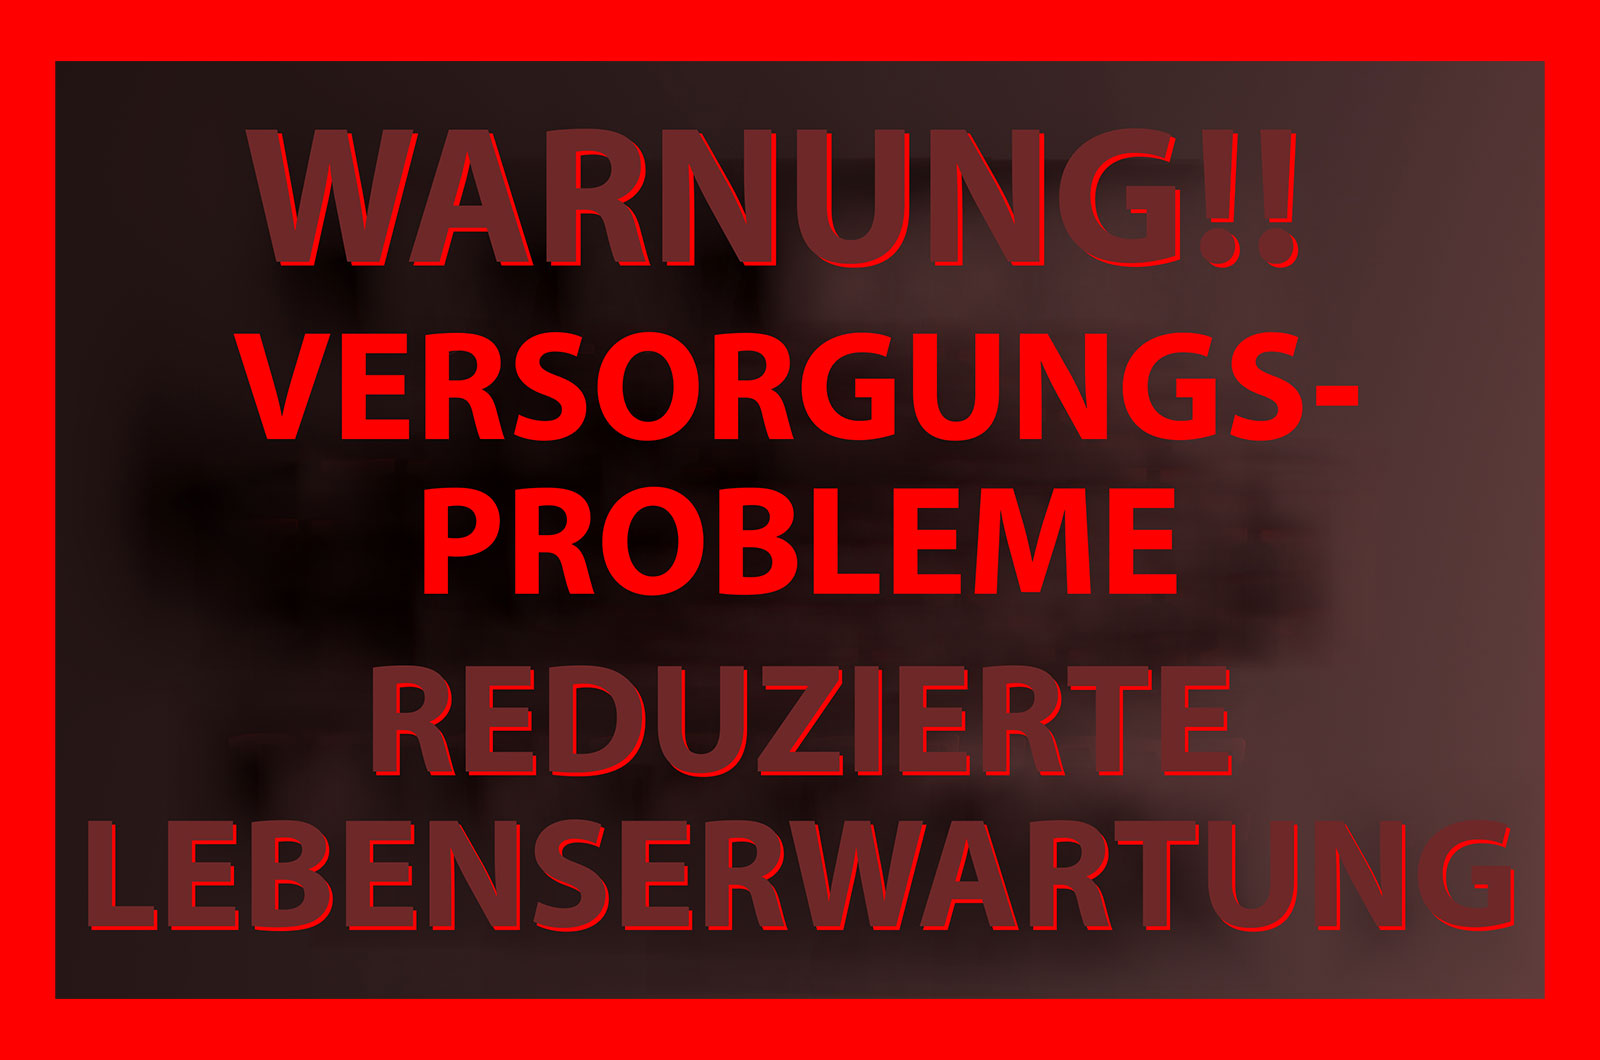 roter Text auf schwrzem Hintergrund - Warnung!! Versorgungsprobleme, reduzierte Lebenserwartung